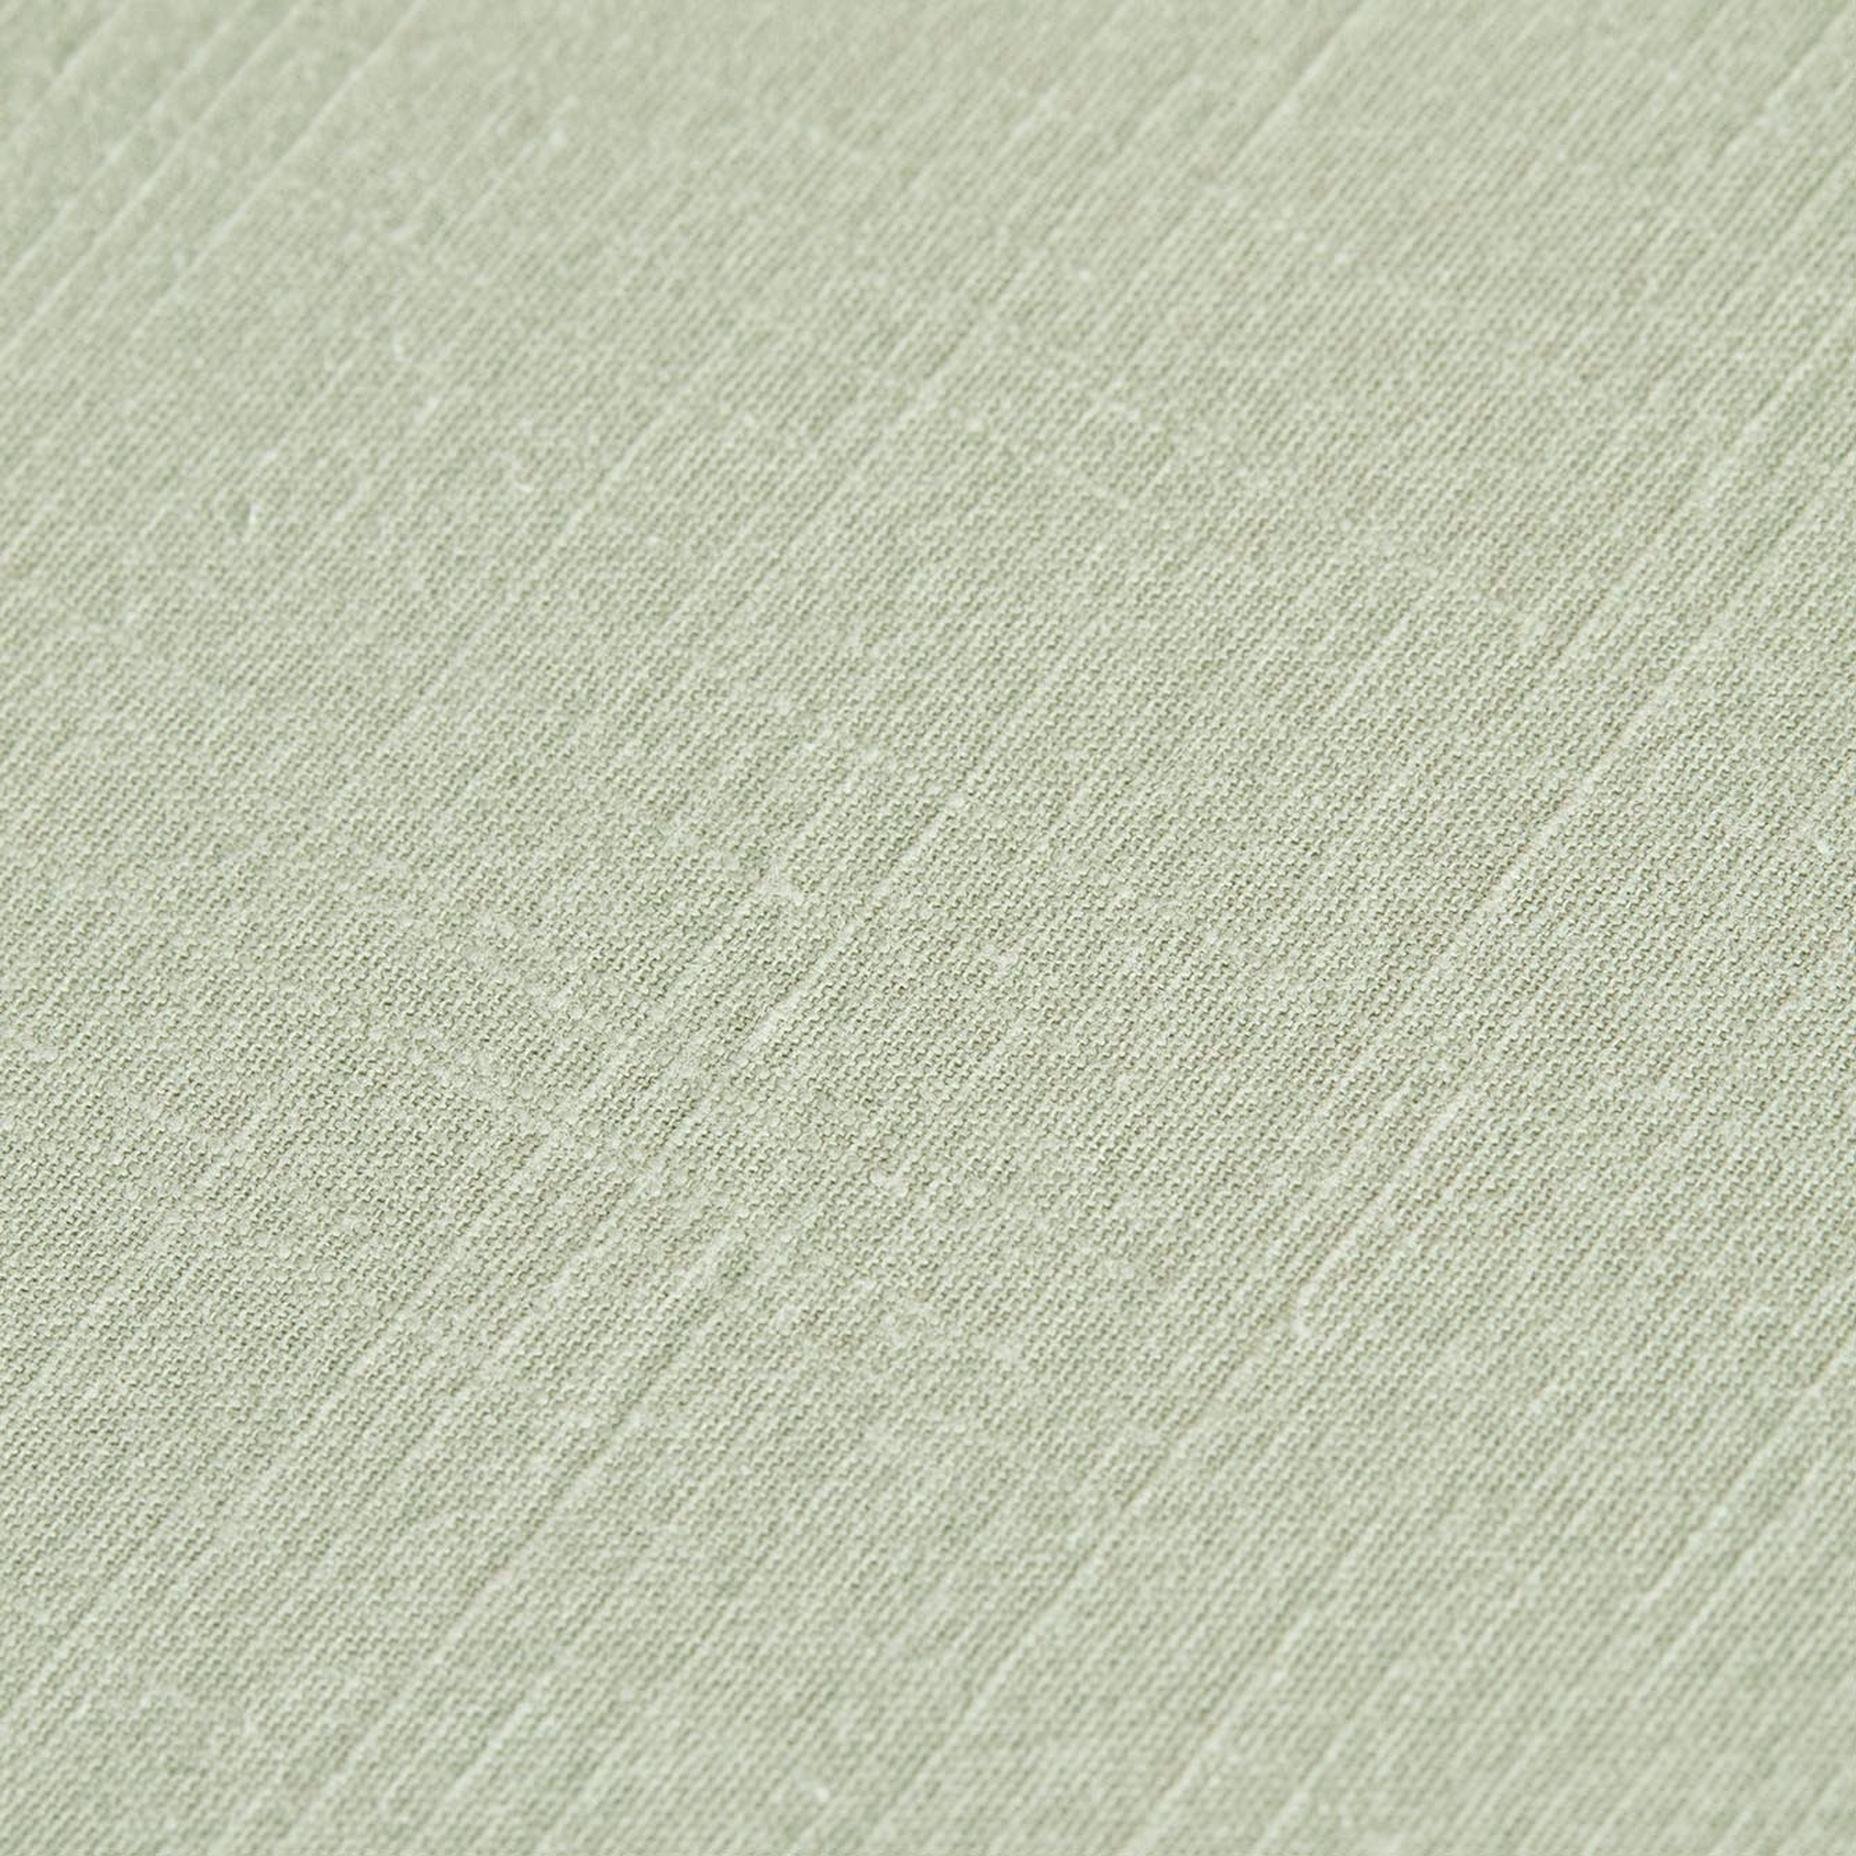 %100 Pamuk Macahel King Size Nevresim Takımı Açık Yeşil (240x220 cm)